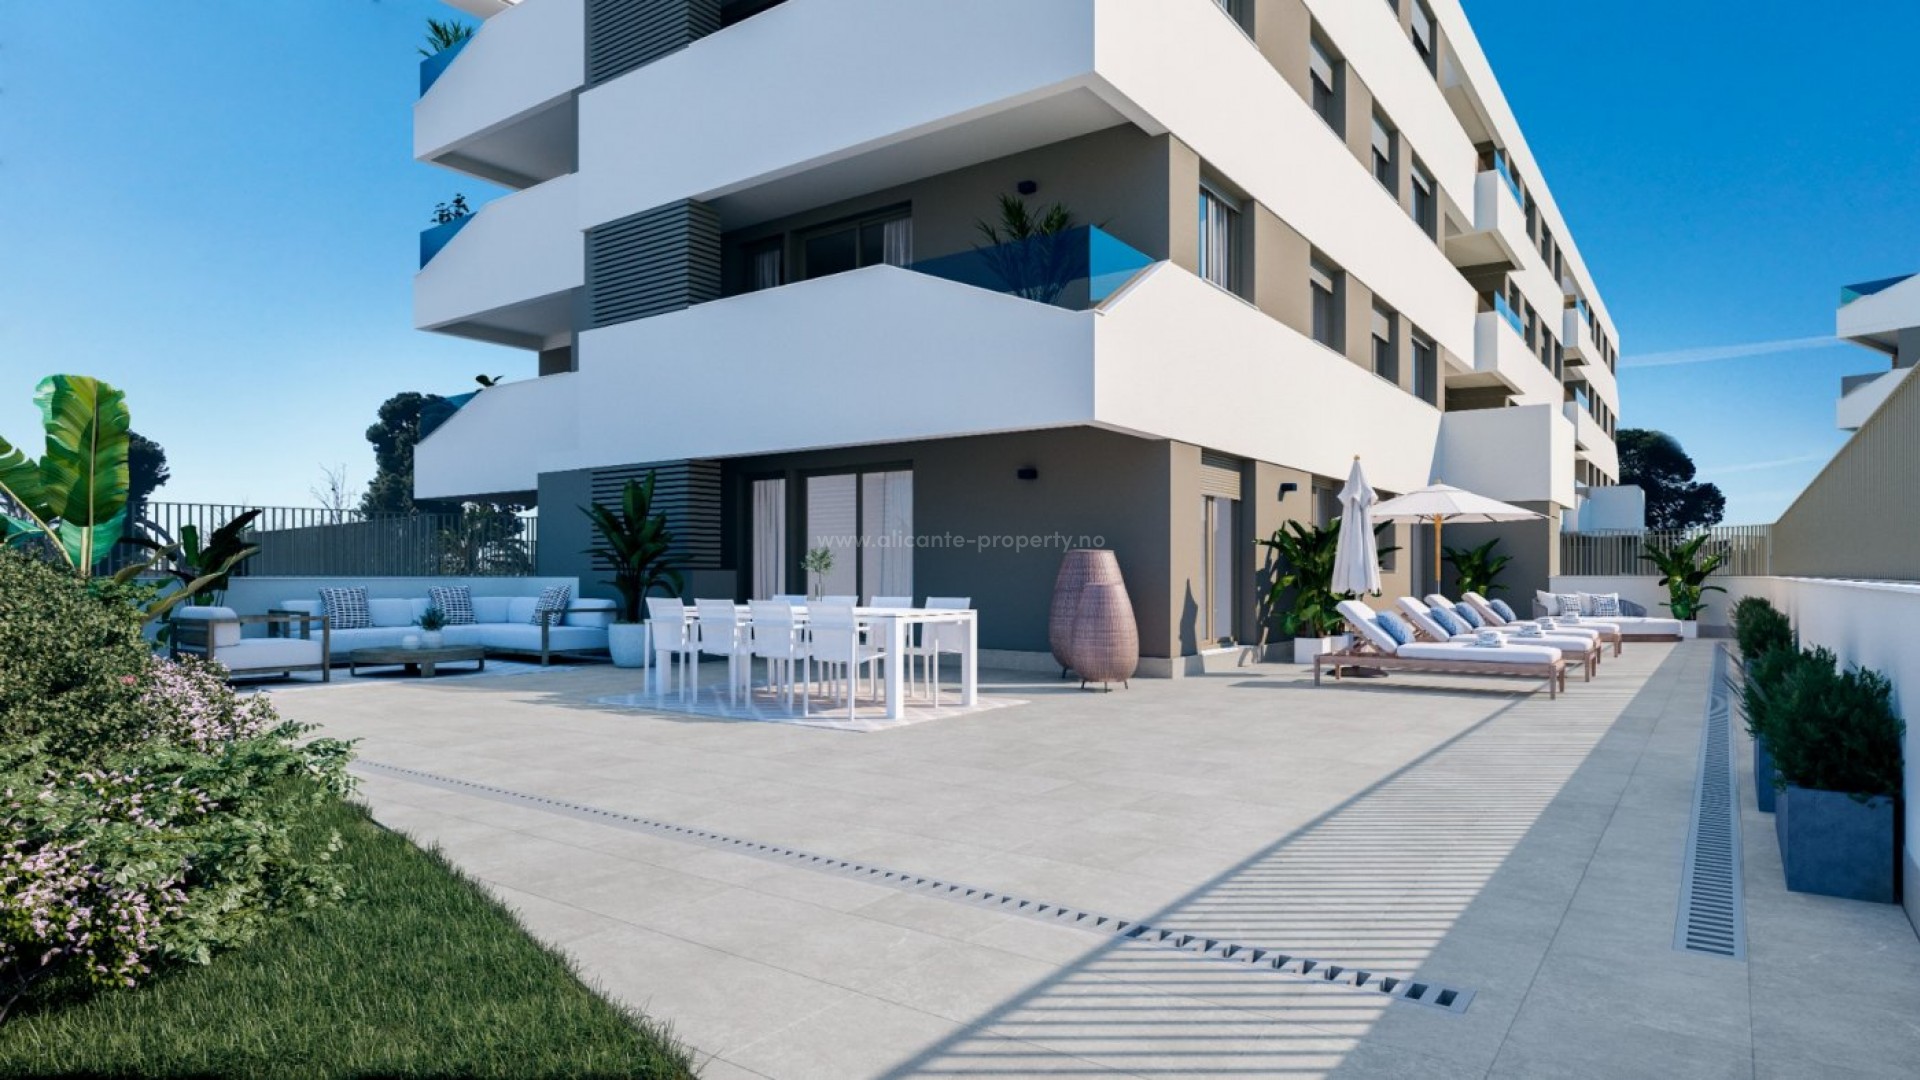 Kjøpe leilighet i San Juan Alicante ? Eksklusive leiligheter med 1/2/3/4 soverom, 2 bad. Fantastiske fellesområder med svømmebasseng, gym og sosial klubb